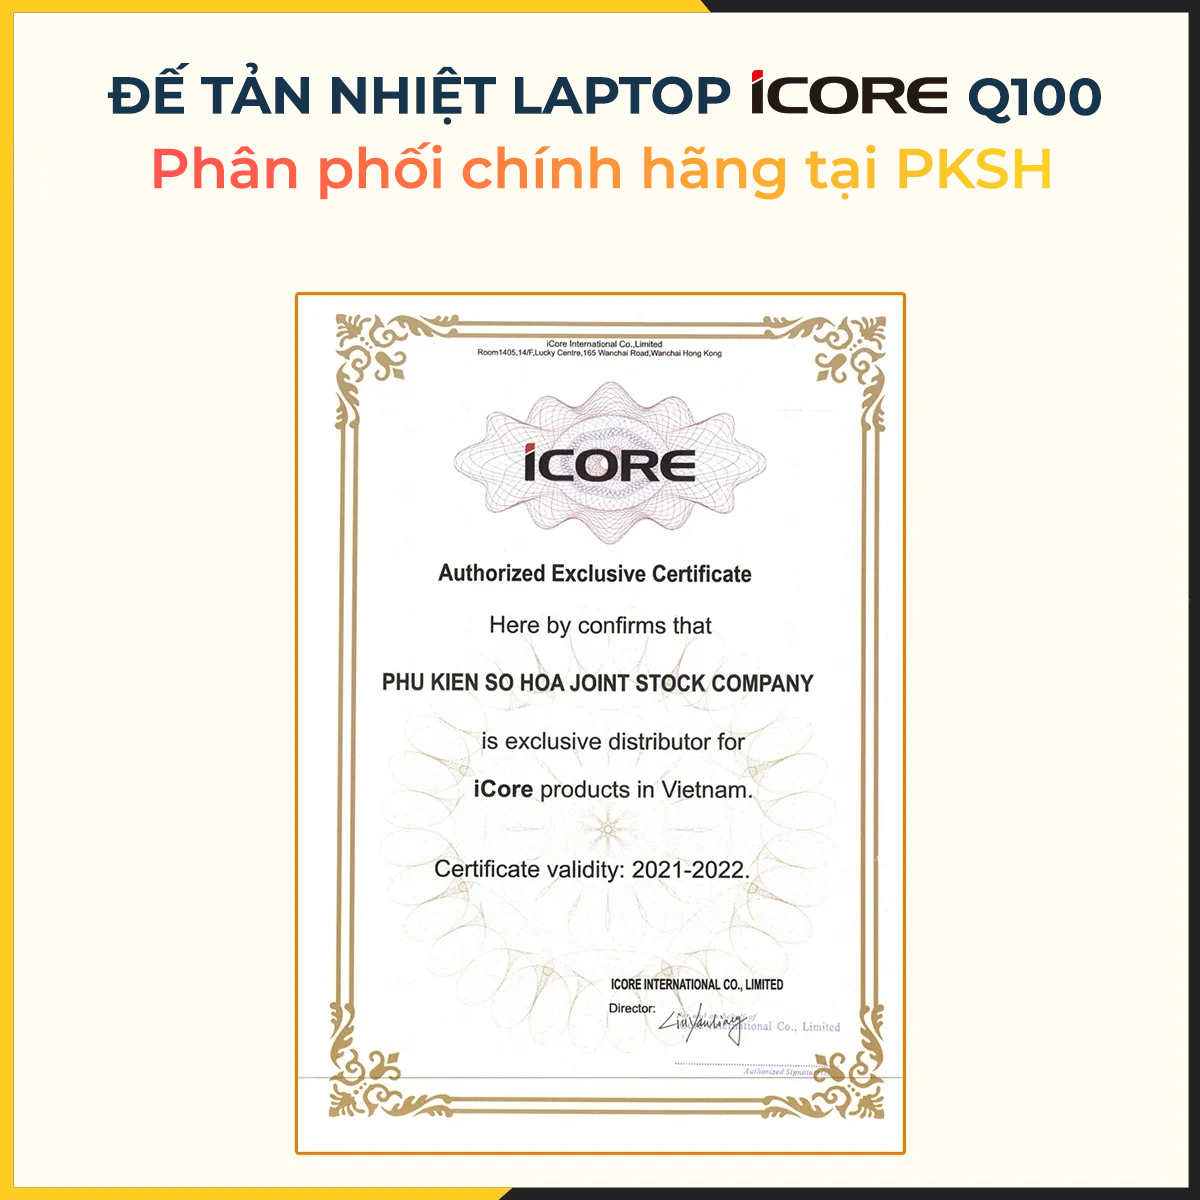 Đế tản nhiệt laptop iCore Q100